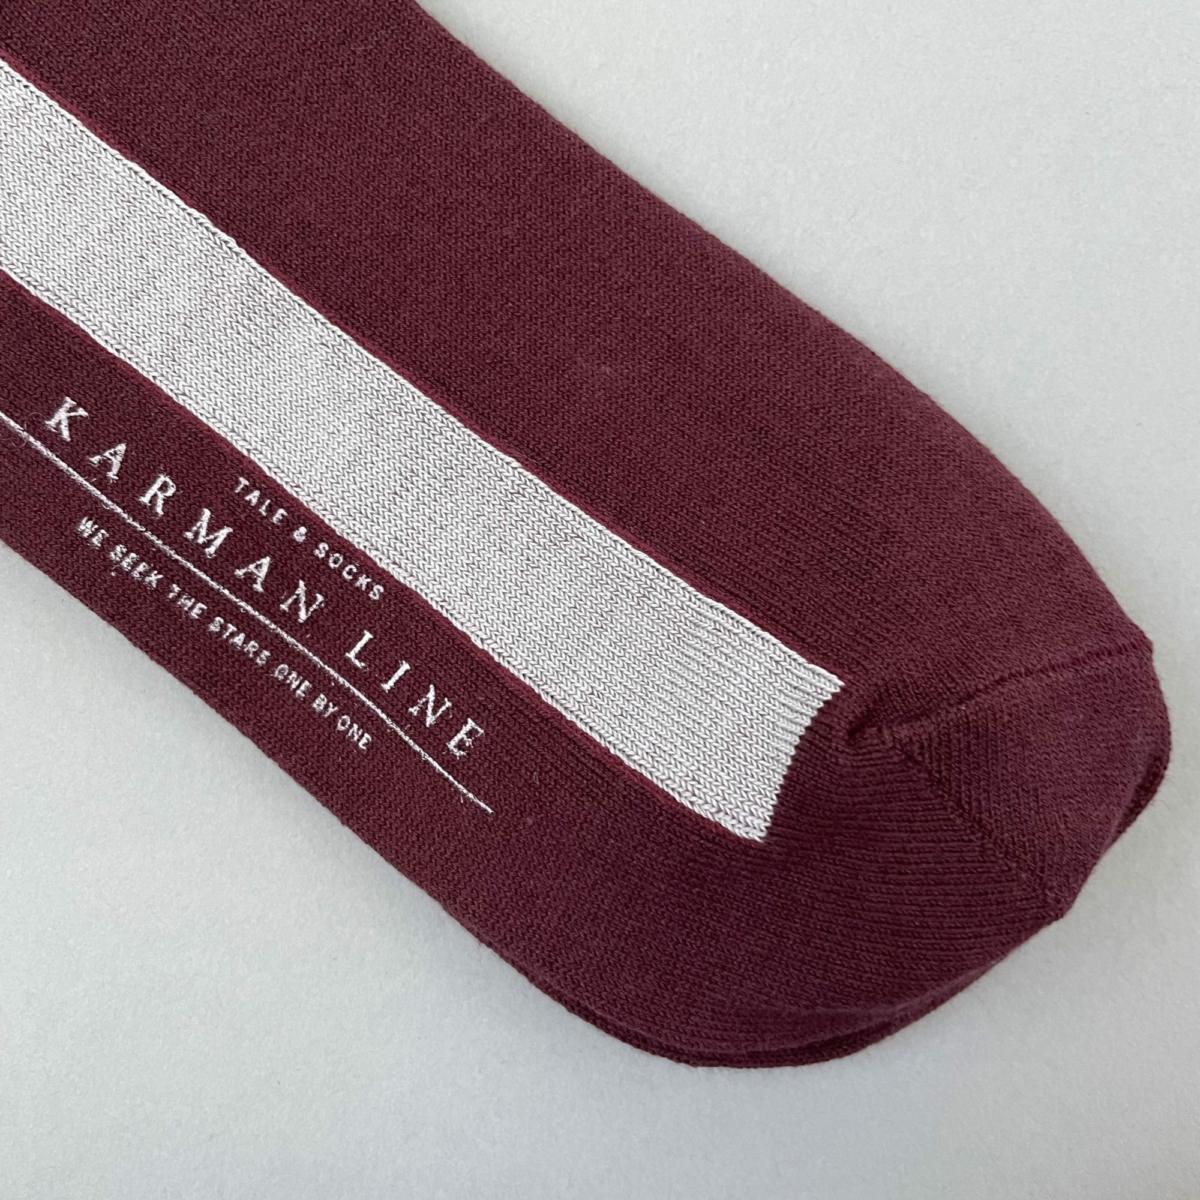 KARMAN LINE GEMINI / Socks / Almond & Sax